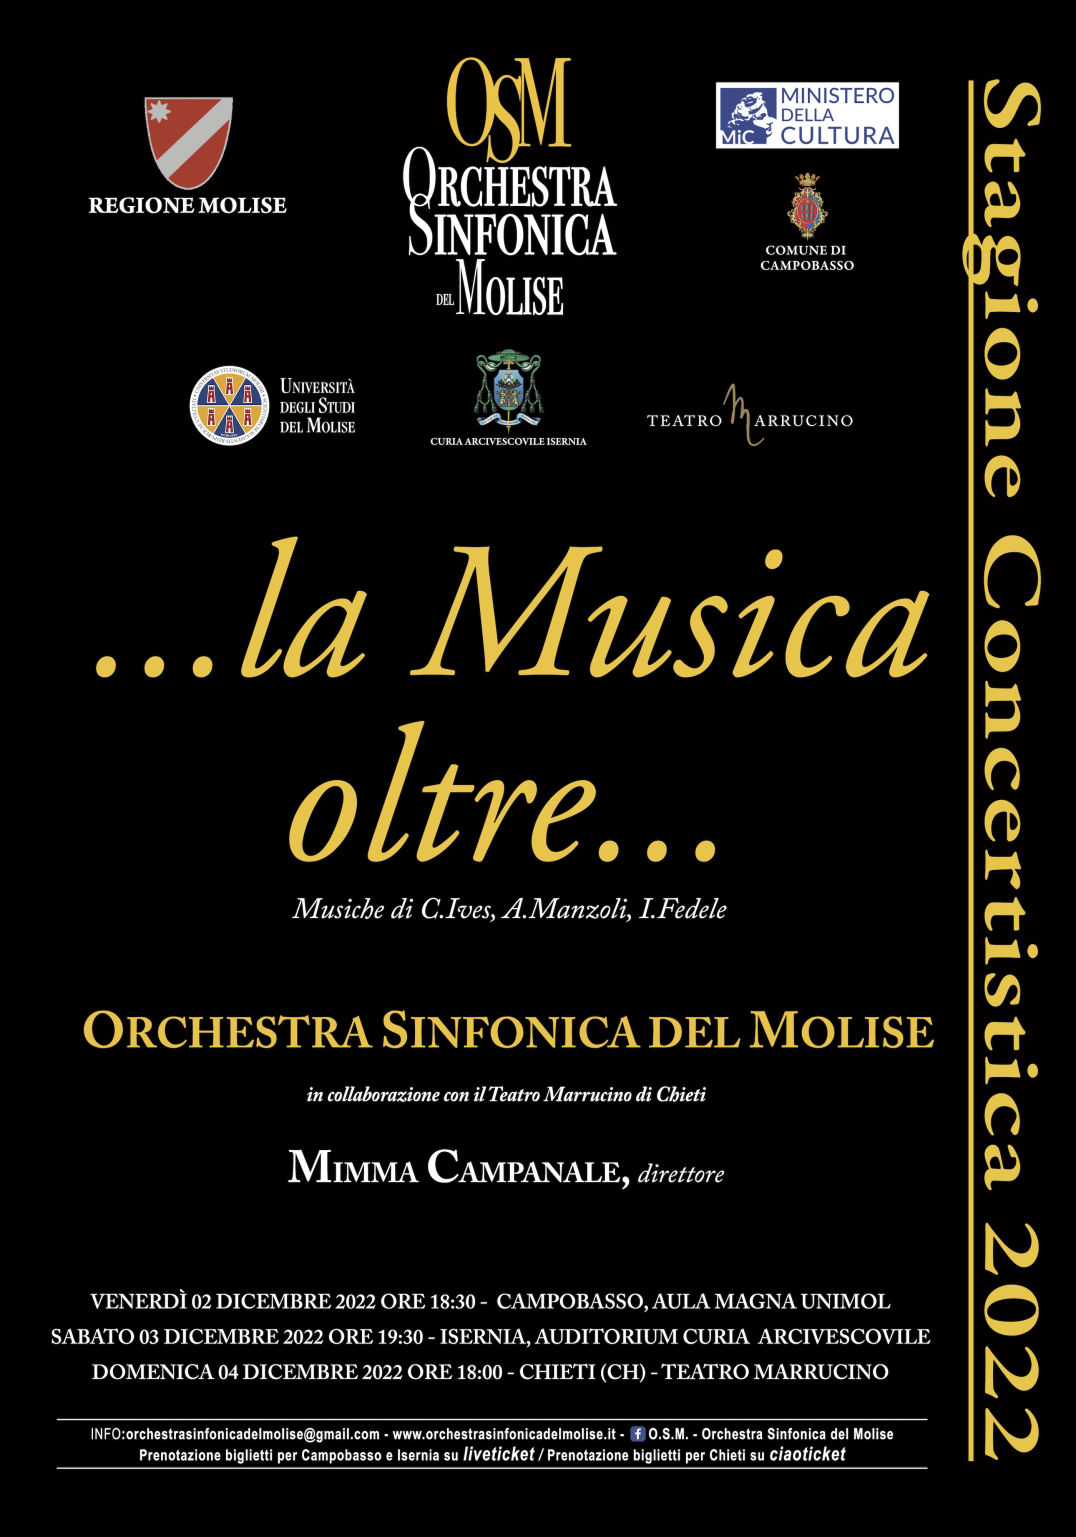 La musica oltre - Orchestra Sinfonica del Molise